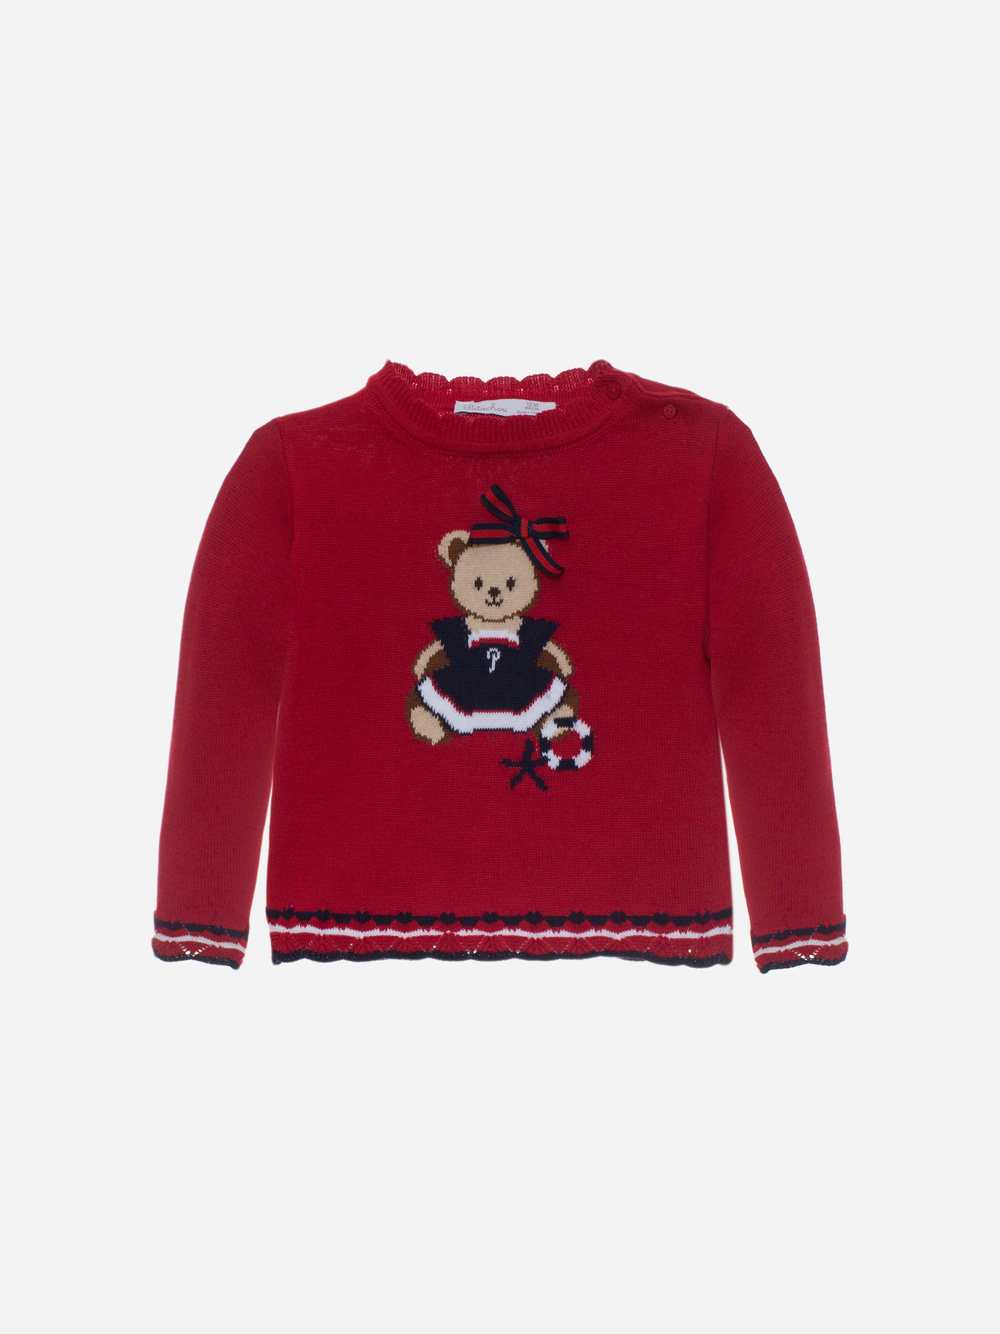 Camisola de malha vermelha com um urso bordado